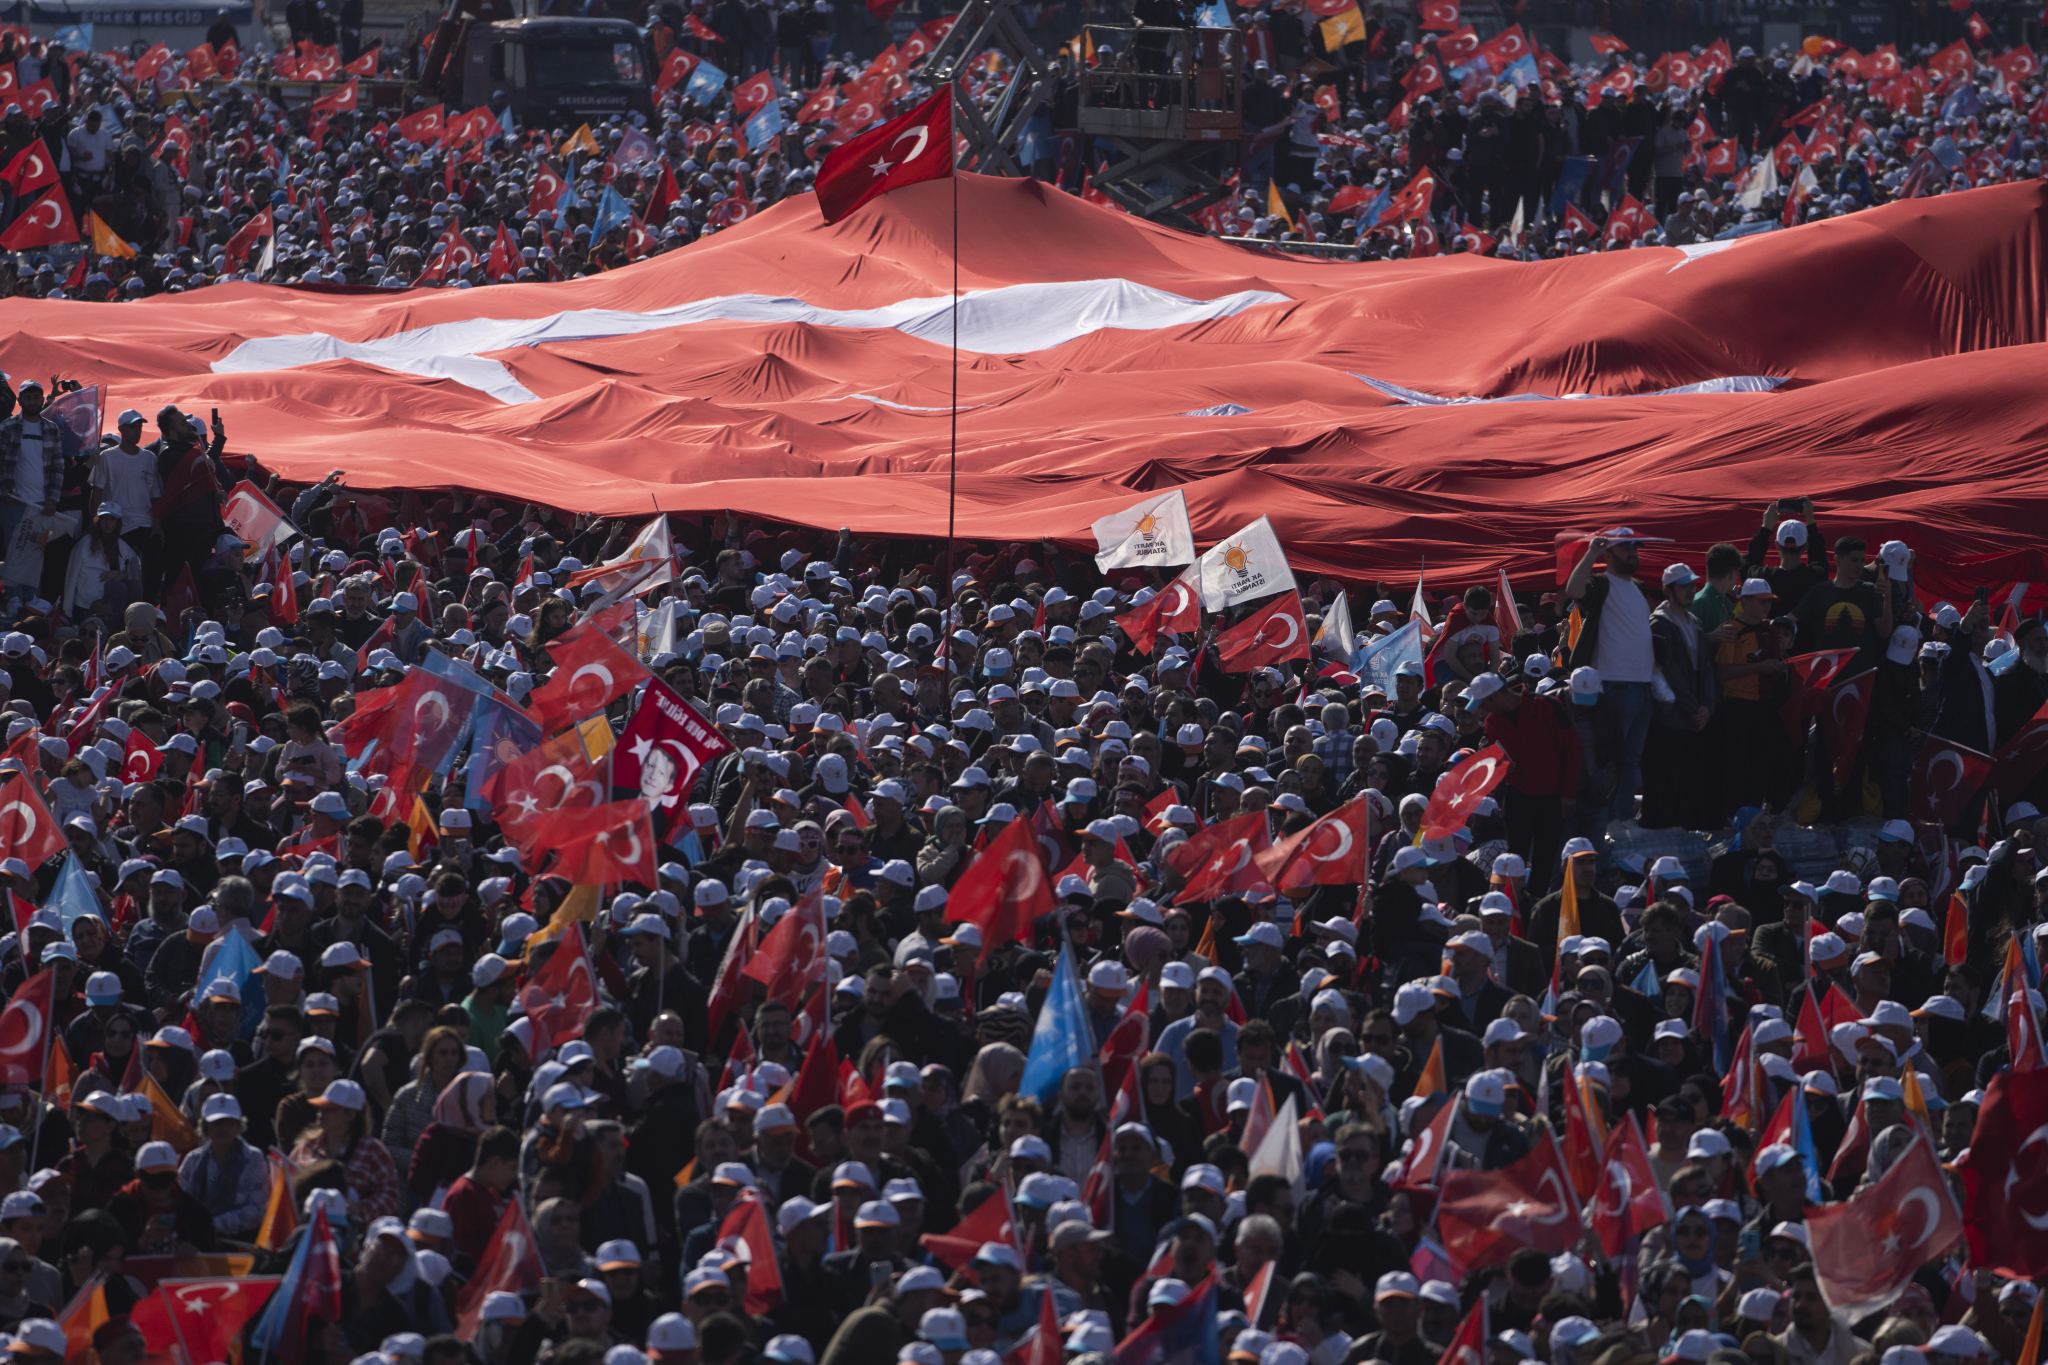 BROJI SITNO DO IZBORA Erdogan održao vatreni govor pred milionima ljudi, 